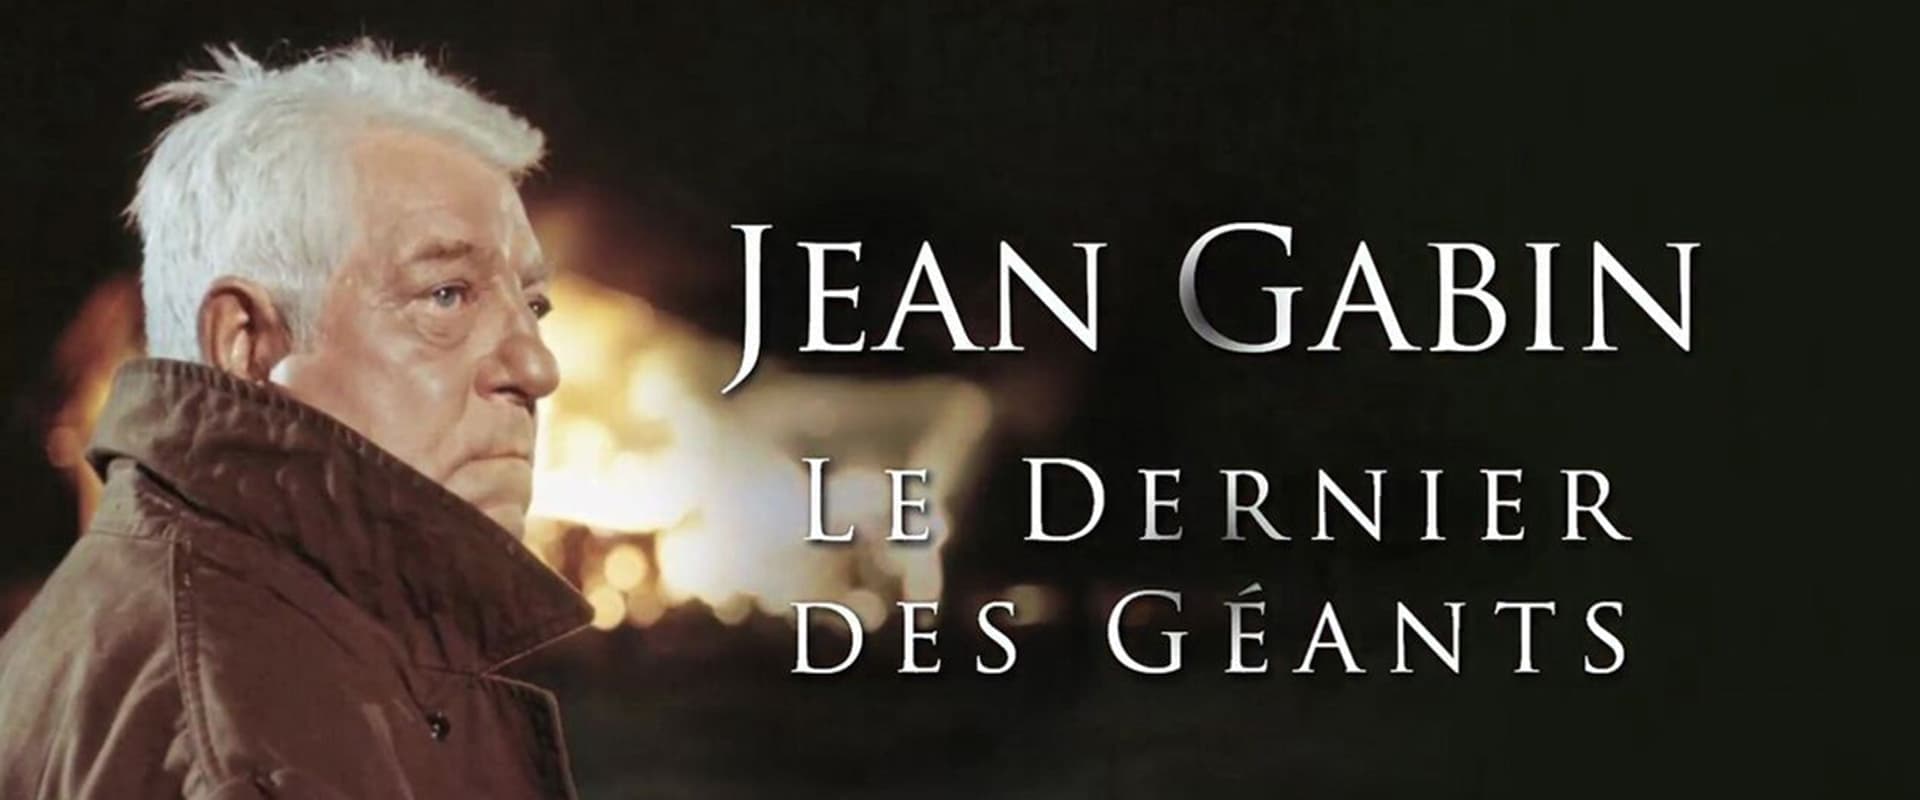 Jean Gabin, le dernier des géants